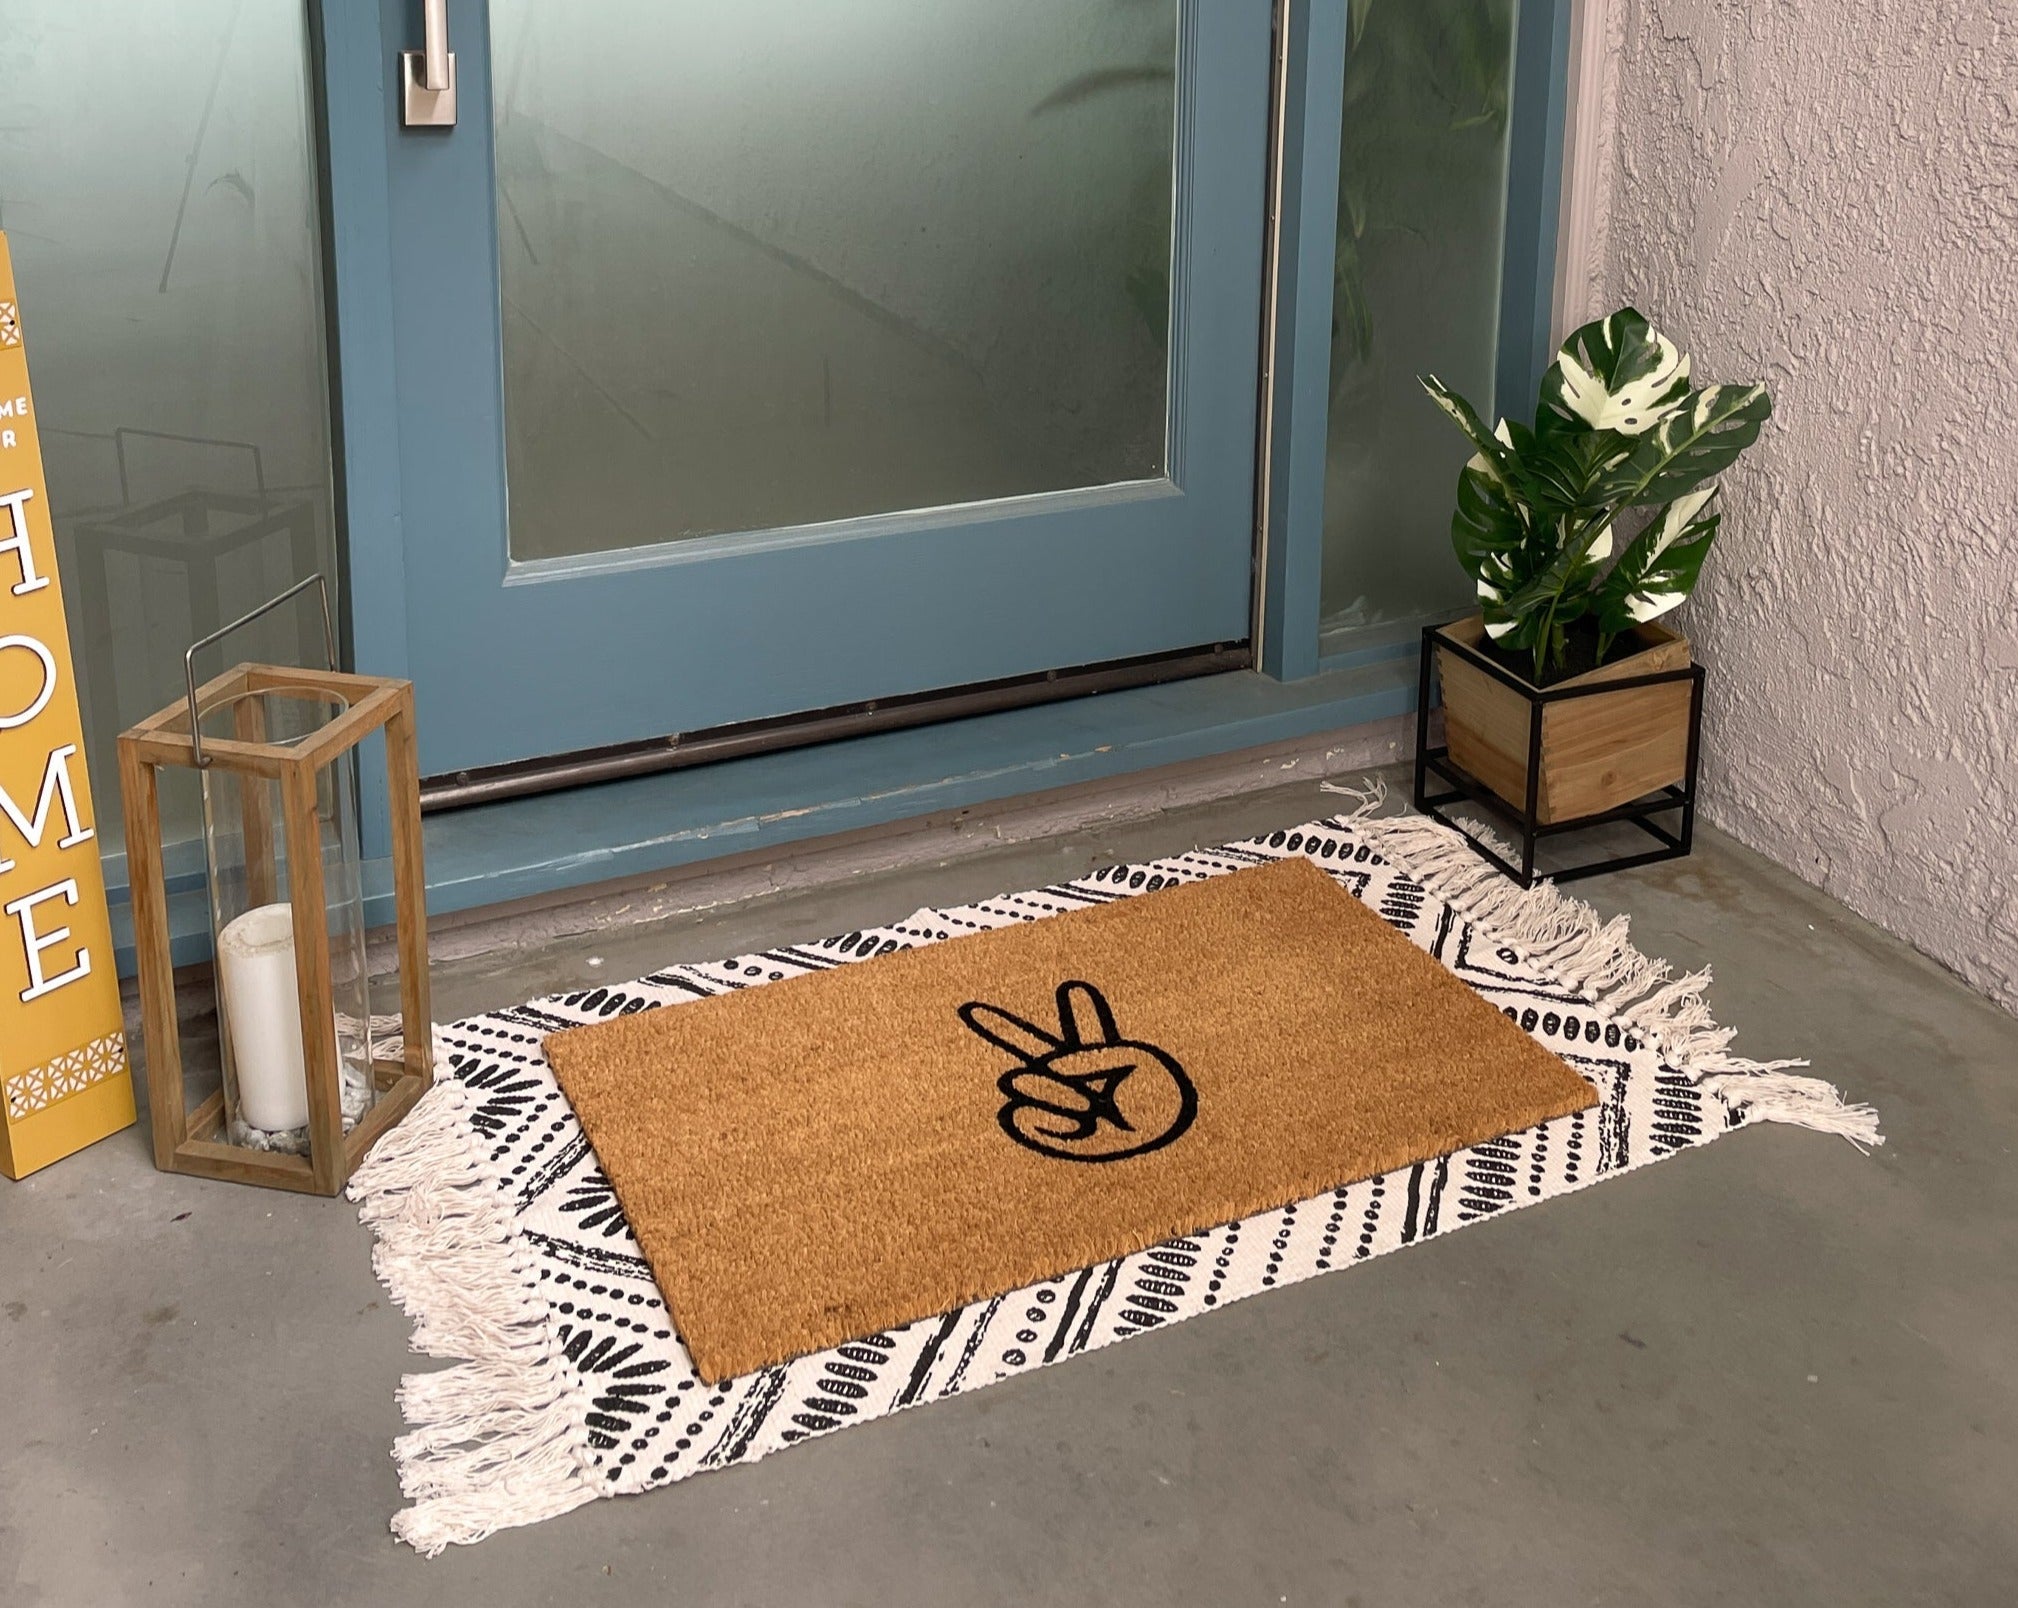 Nickel Designs Hand-Painted Doormat - Modern Howdy